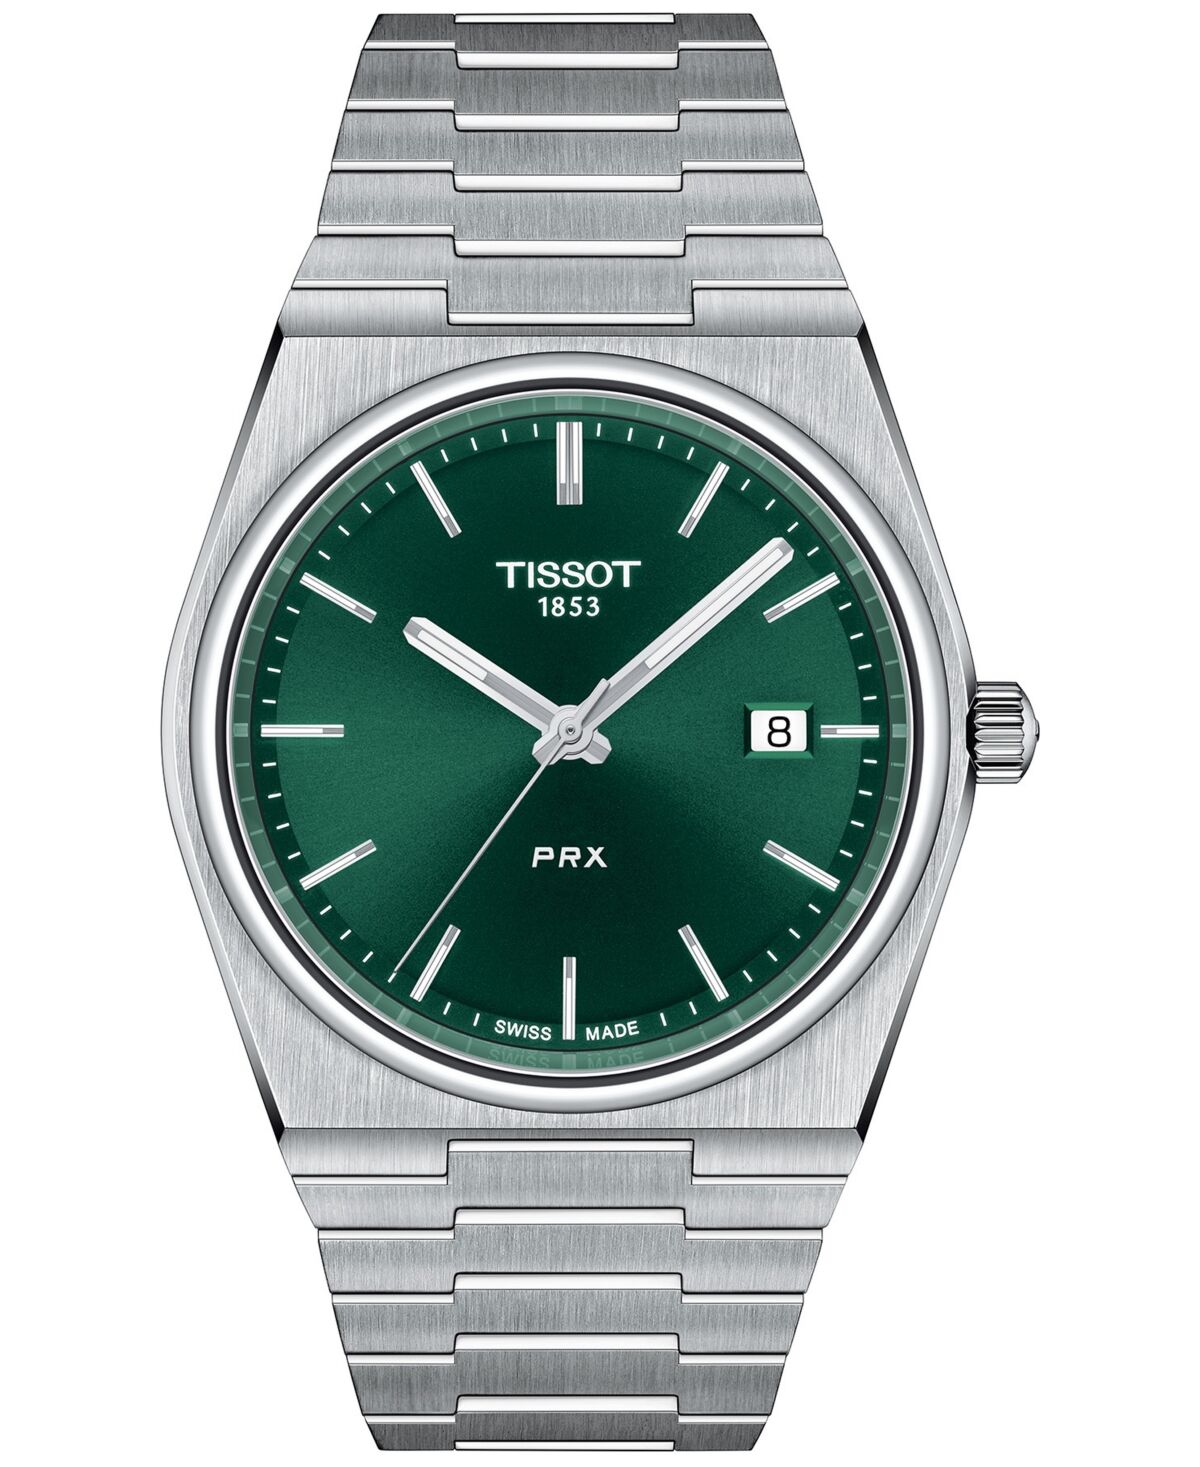 Tissot Men's Prx Silver-Tone Stainless Steel Bracelet Watch 40mm - Silver